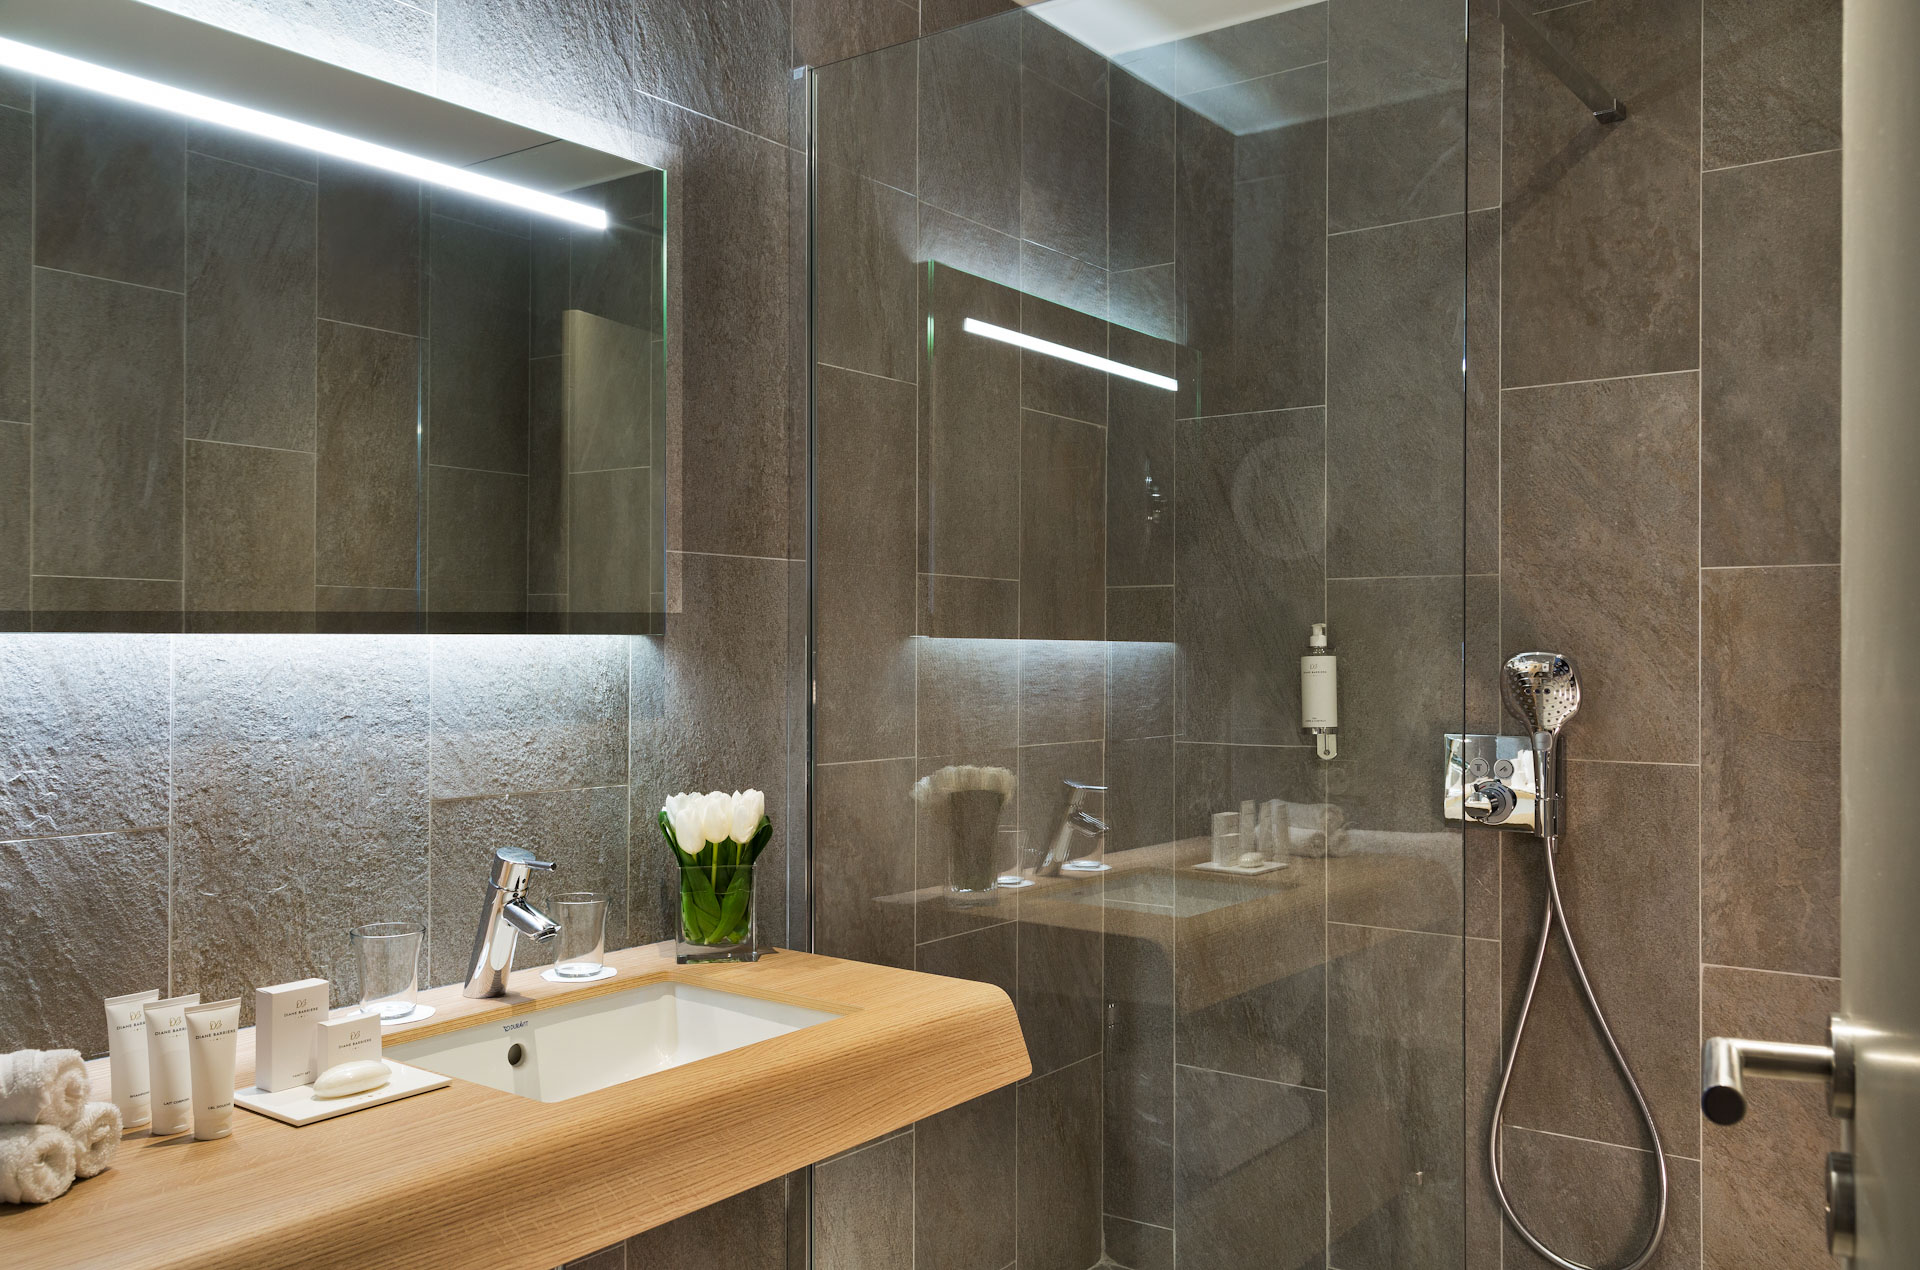 A modern shower at Hotel du Golf Barriere, Deauville, France